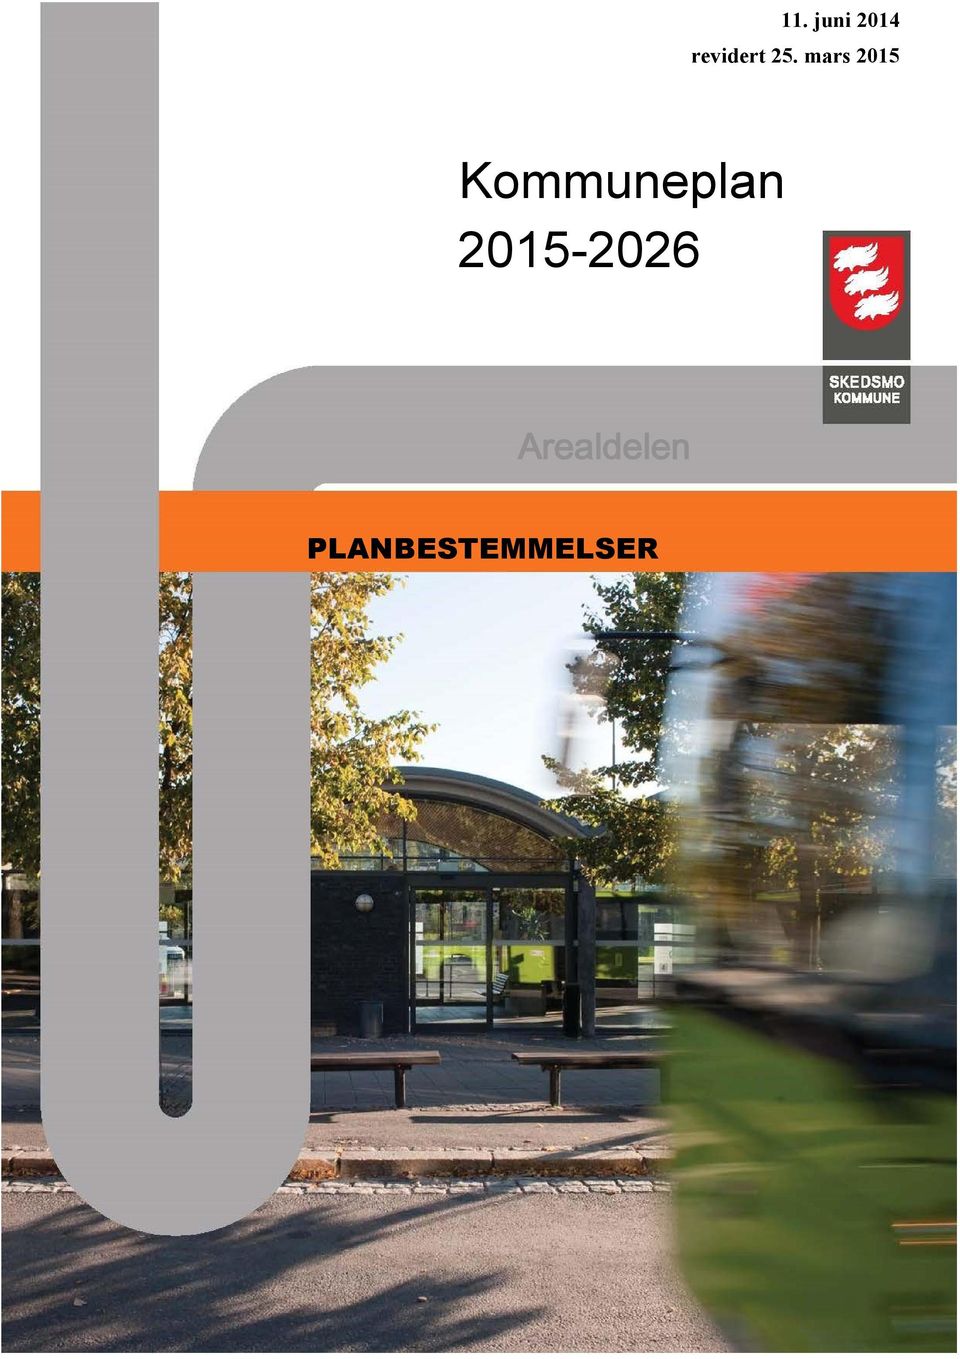 mars 2015 Kommuneplan